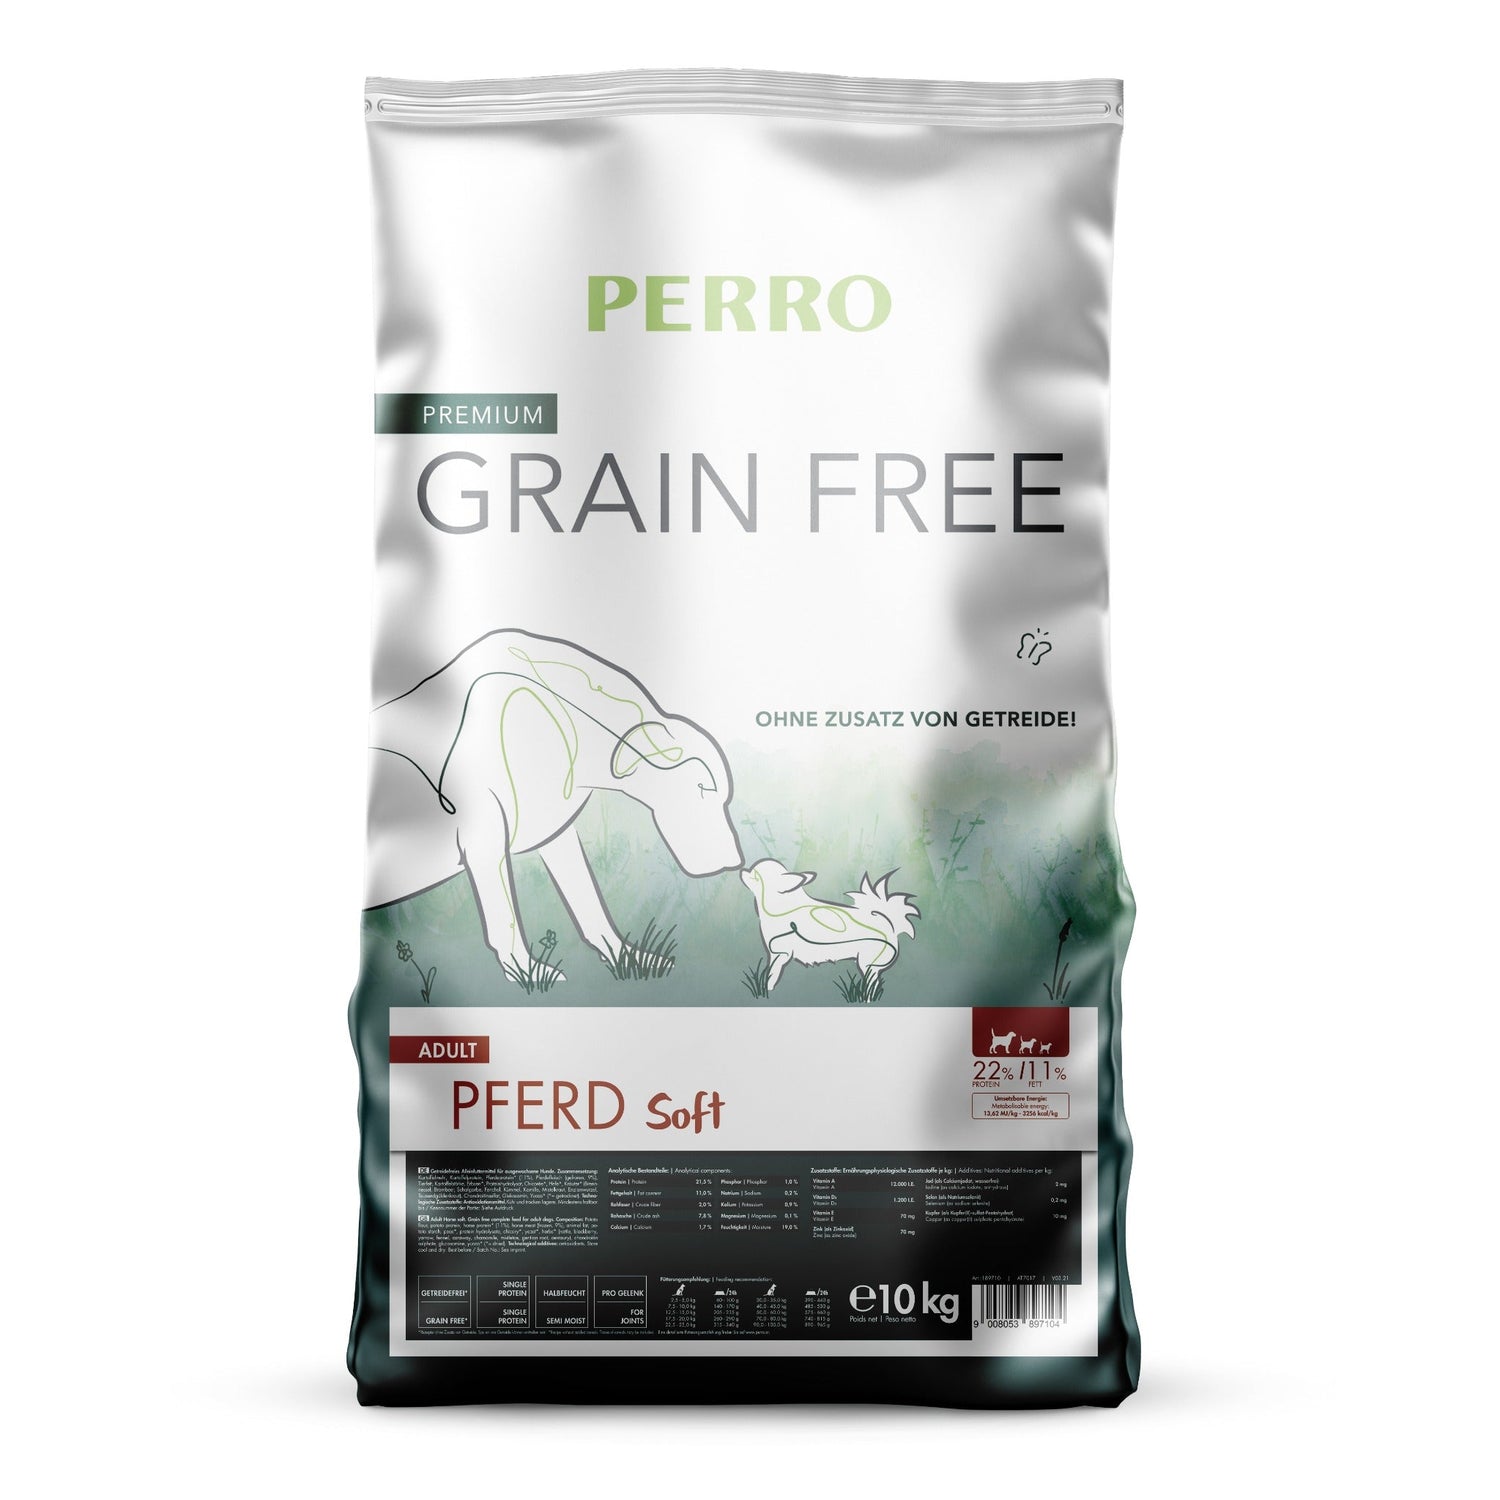 Perro Grain Free Adult Pferd Soft - Hunde Trockenfutter - Woofshack